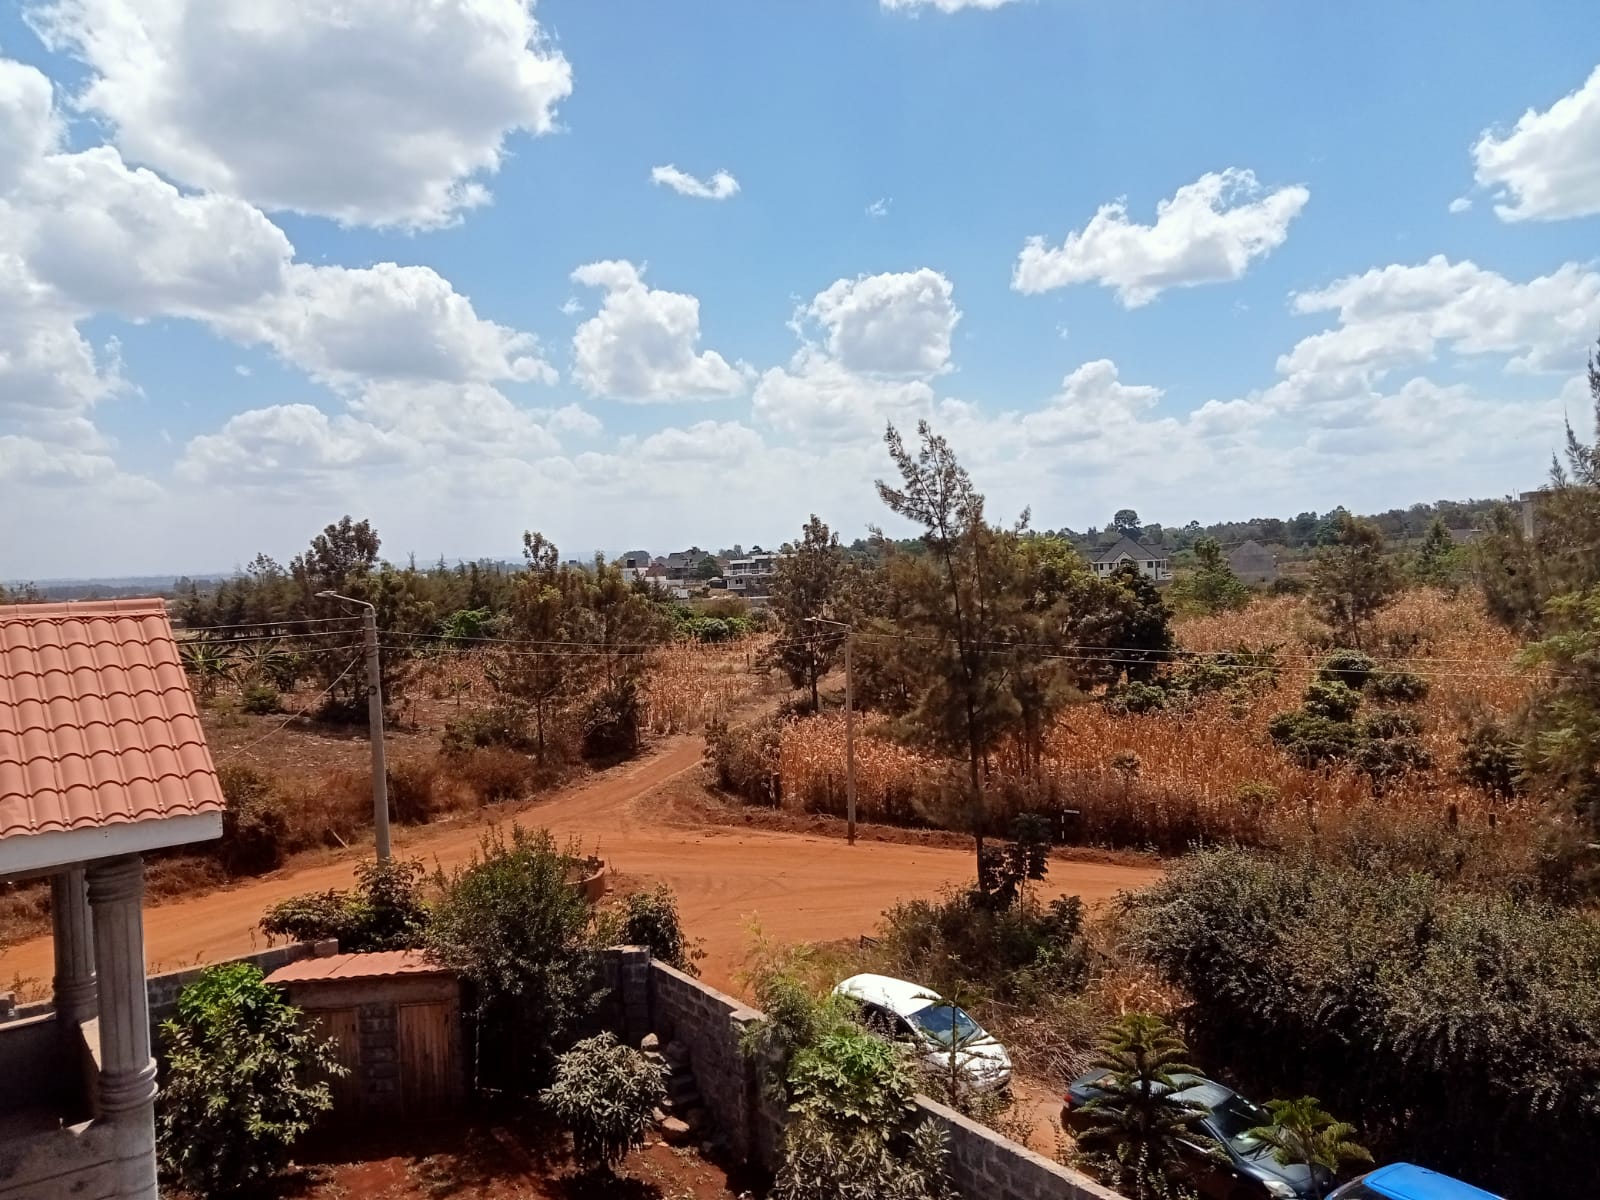 Ruiru Ukombozi Green Gardens Estate